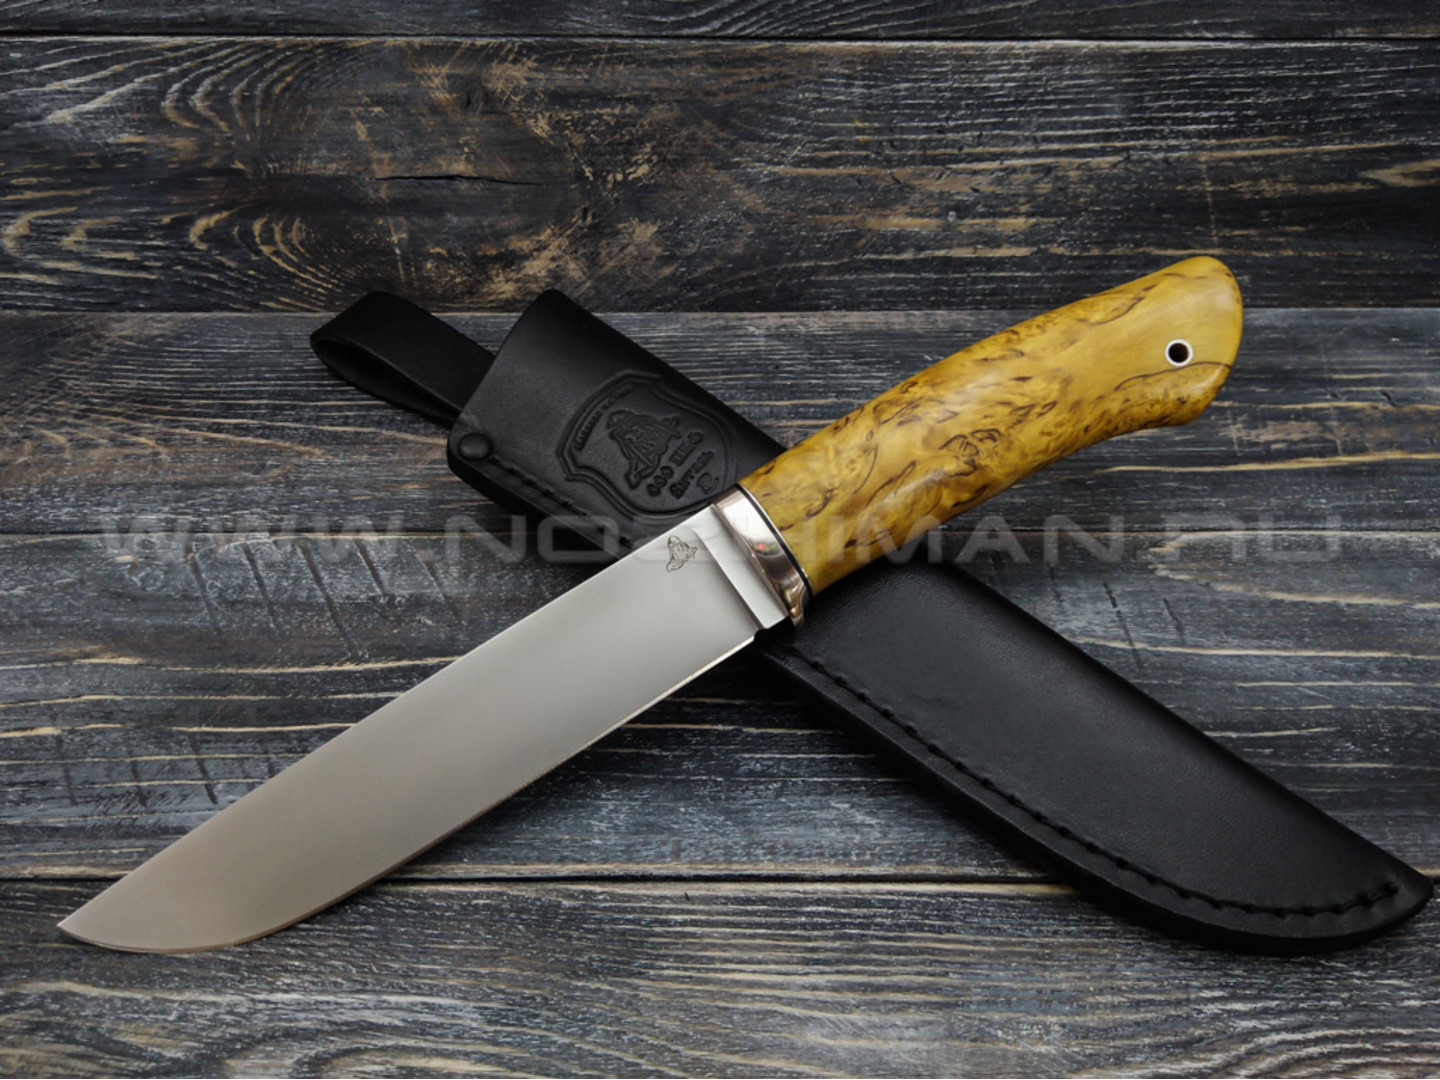 Нож "Консул" Bohler M390